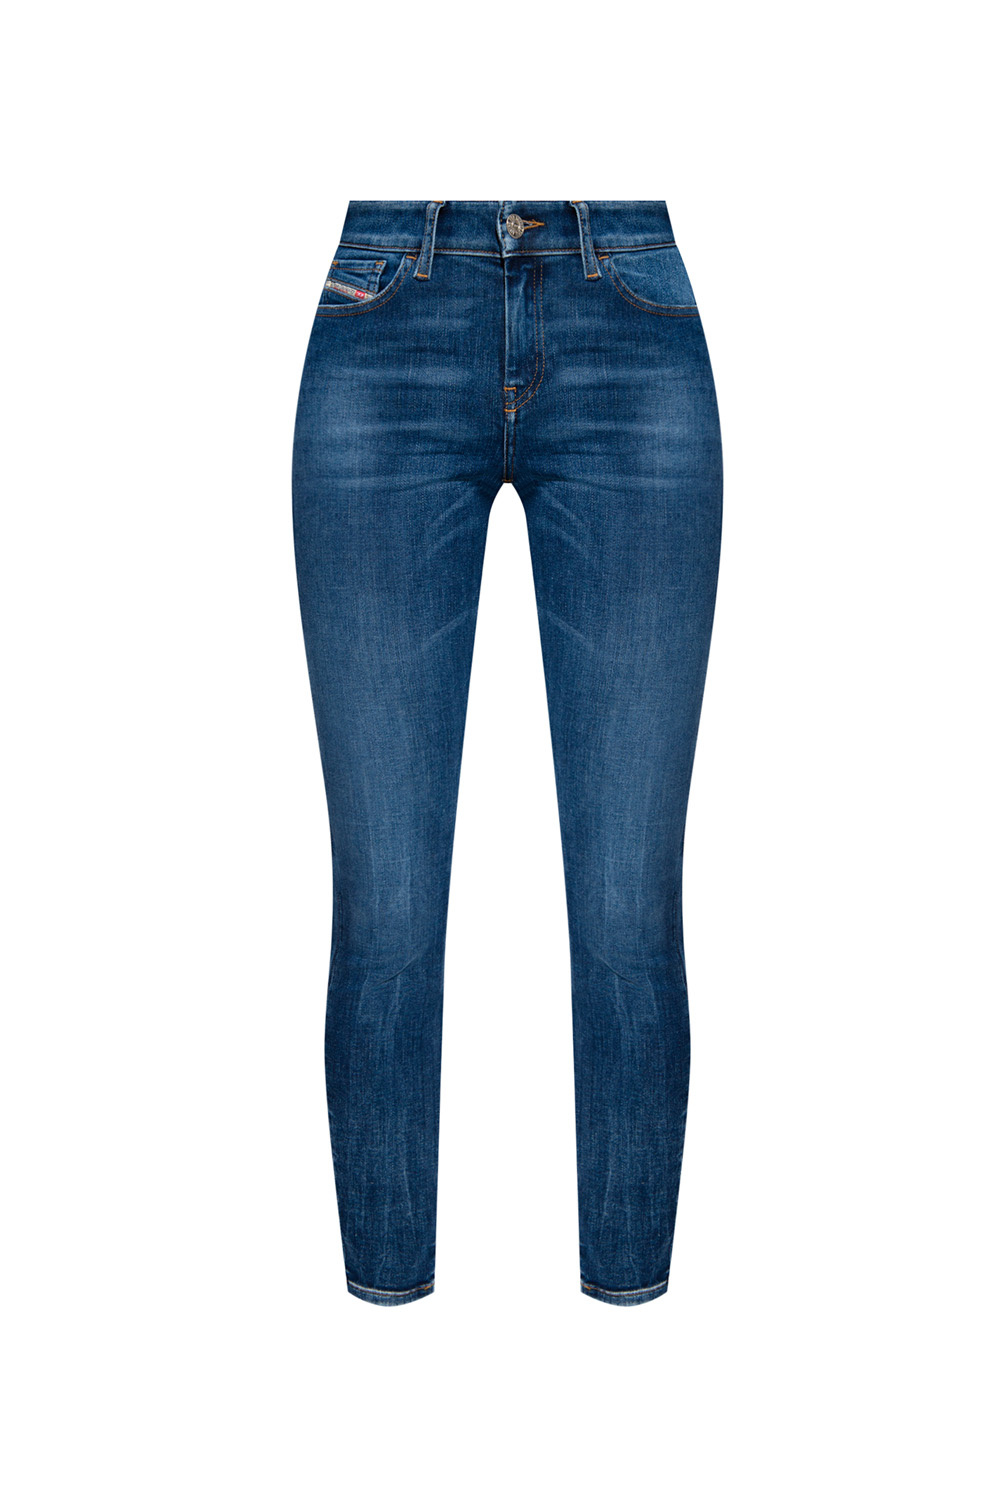 Diesel ‘Slandy’ super skinny jeans